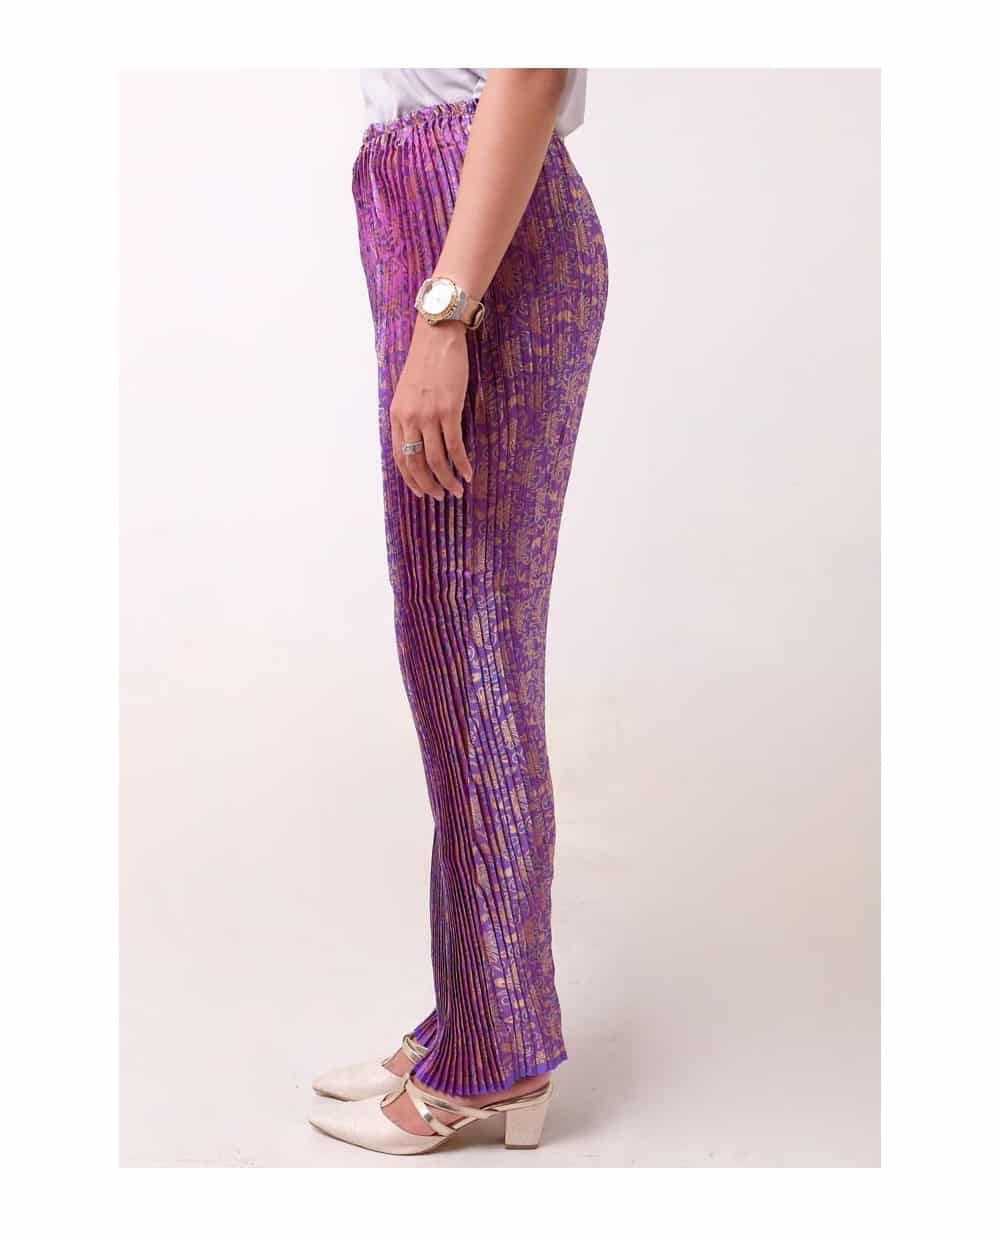  Rok  Batik Model  Plisket  Thegorbalsla